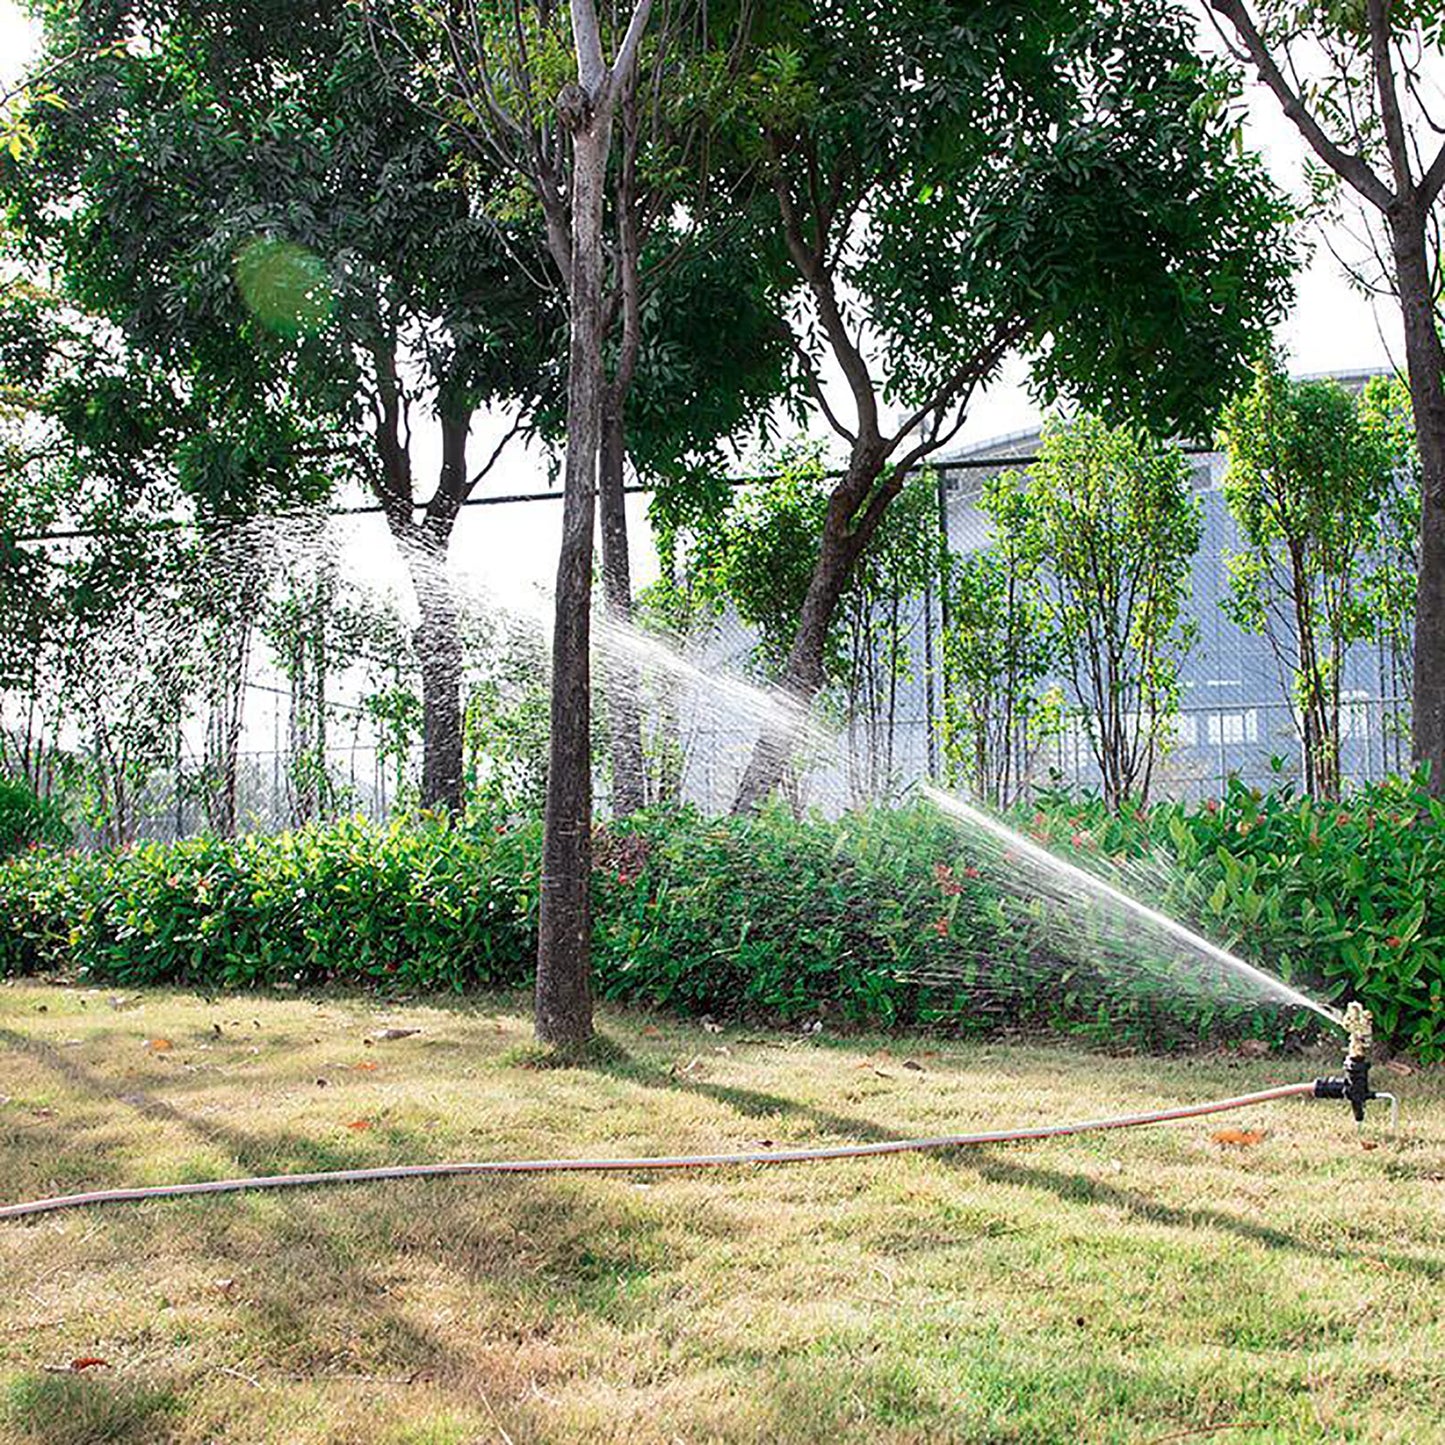 1/2 "de rosca de rosca giratória de rosca giratória de pankler ajustável Impacto de aspersão do jardim de jardim do parque de jardim de irrigação de campo de irrigação